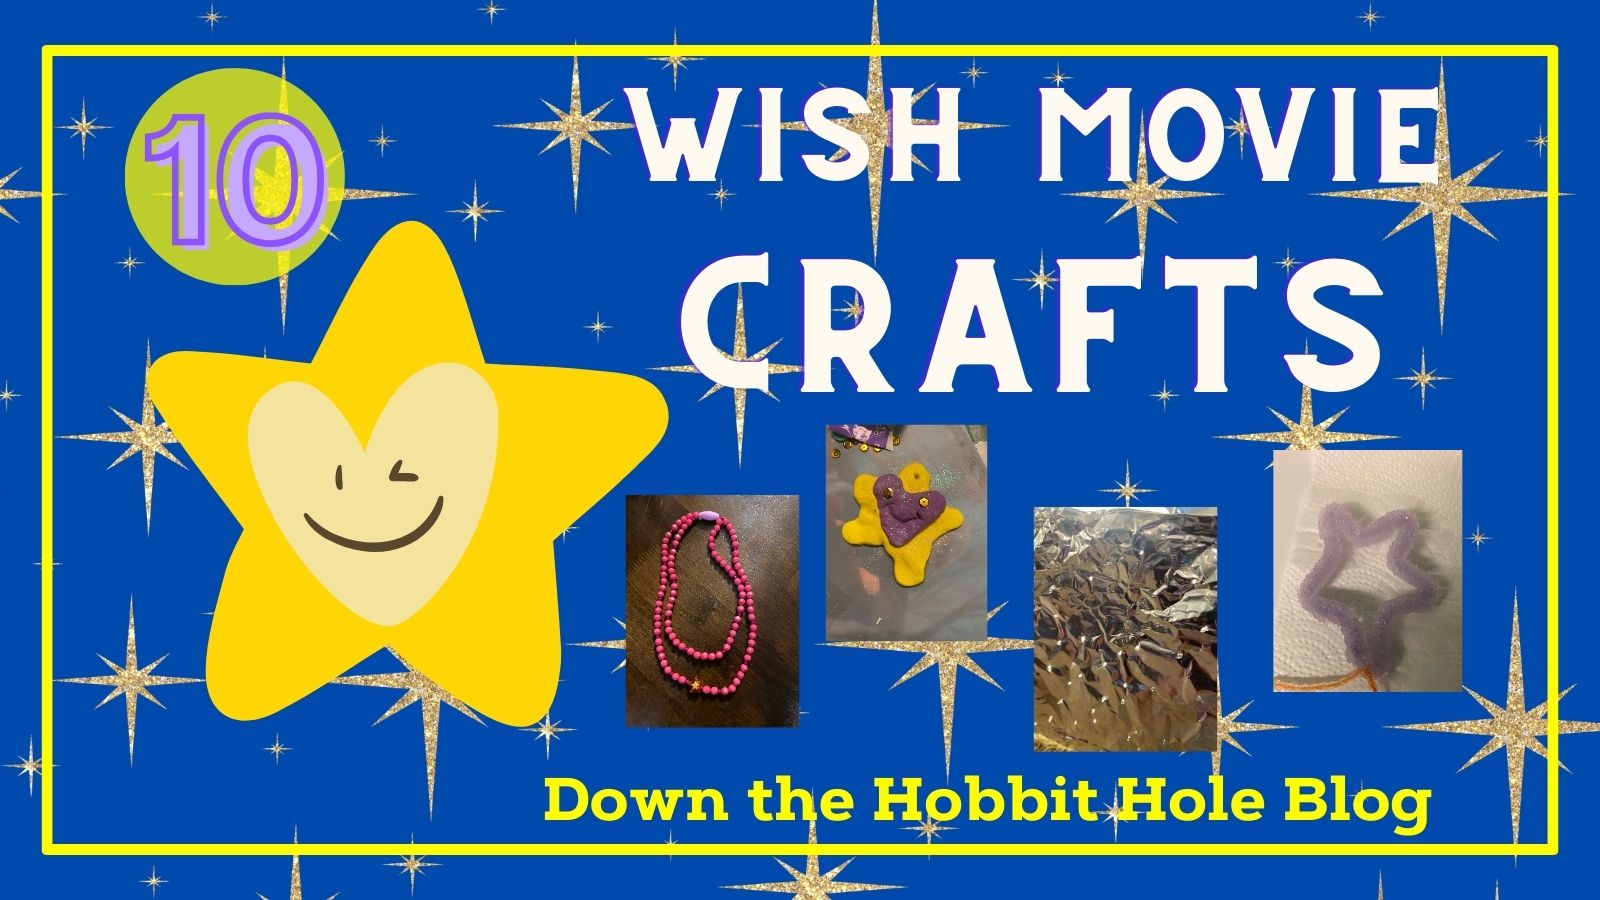 10 wish movie crafts